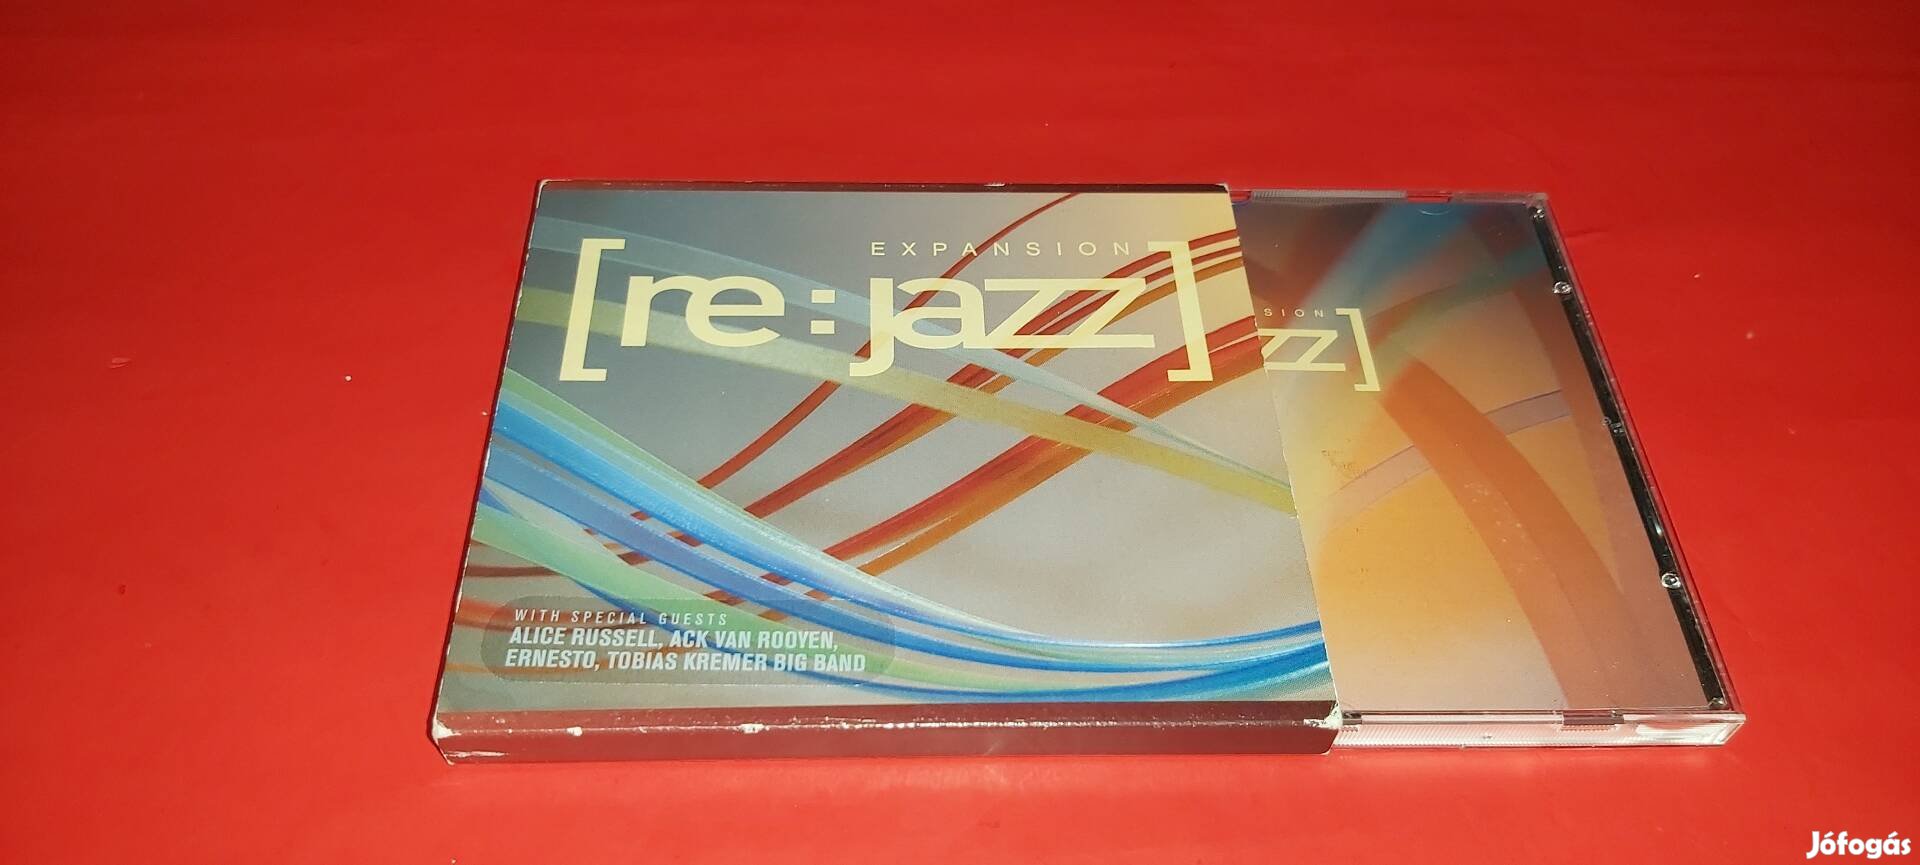 Expansion RE:Jazz Cd 2006 Jazz